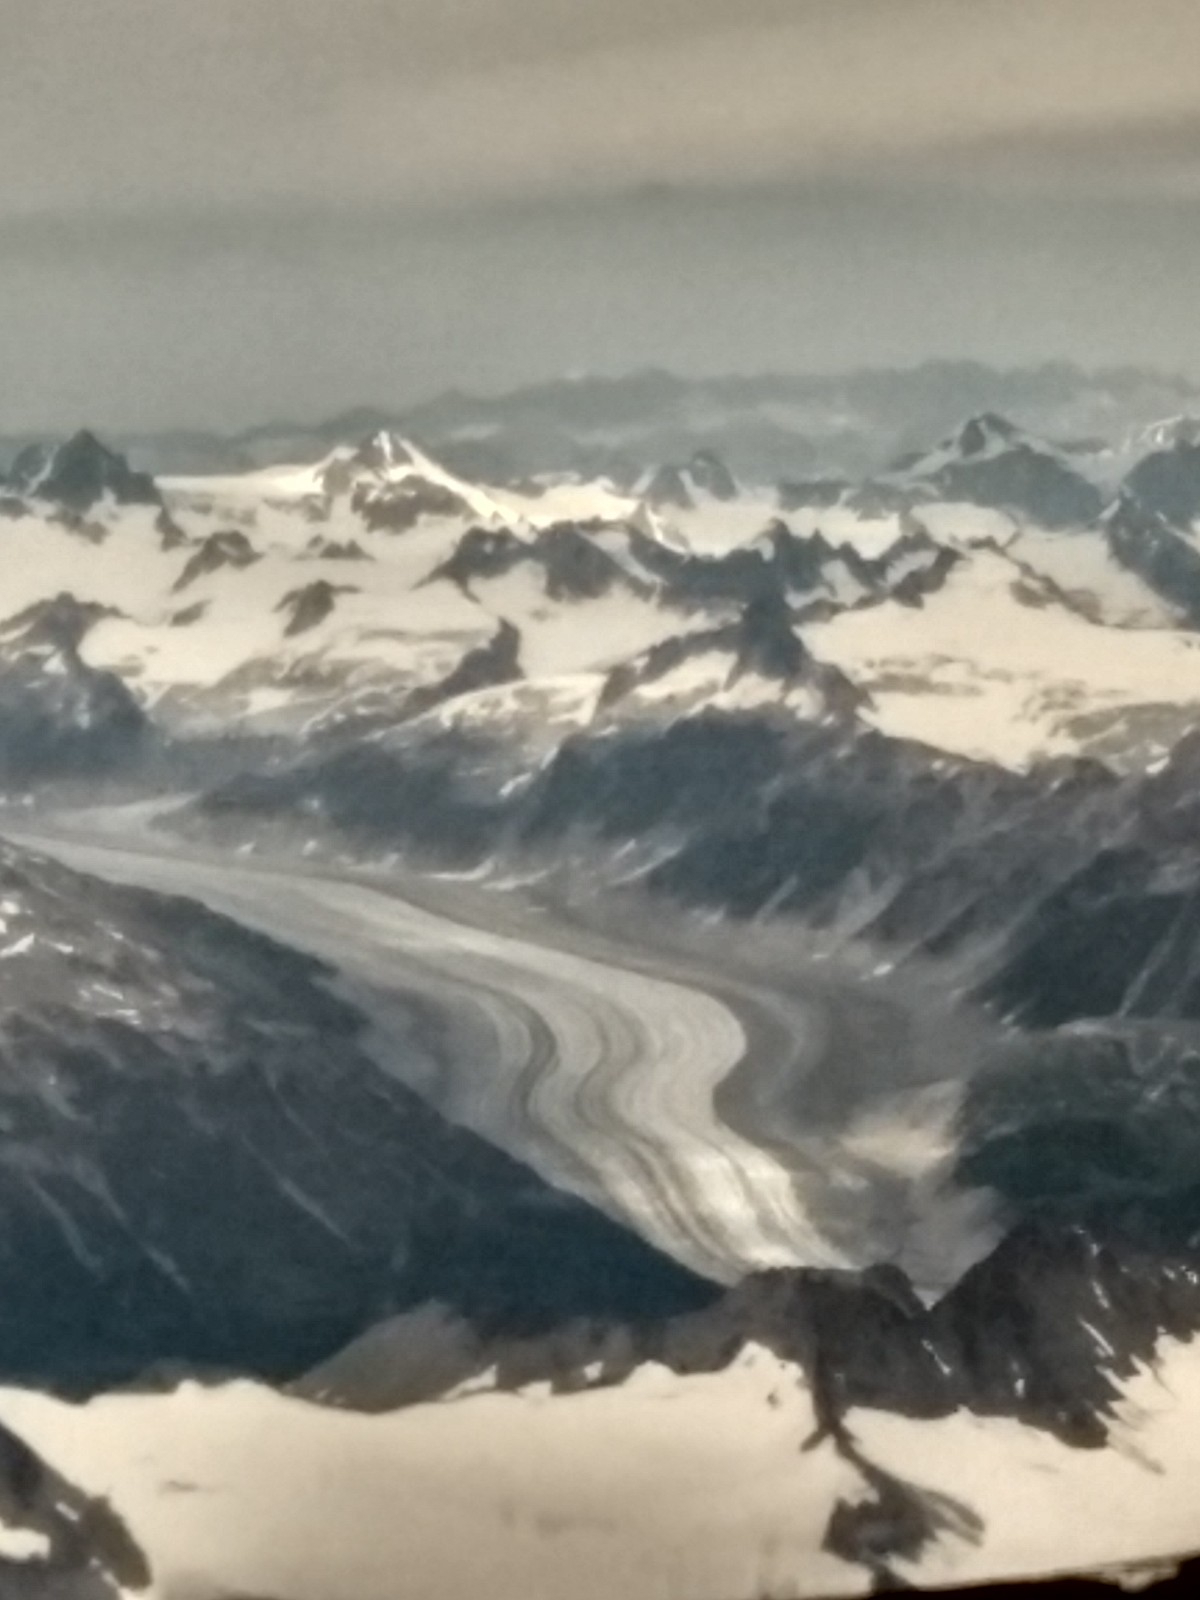 Glacier flying into Anchorage, Alaska?